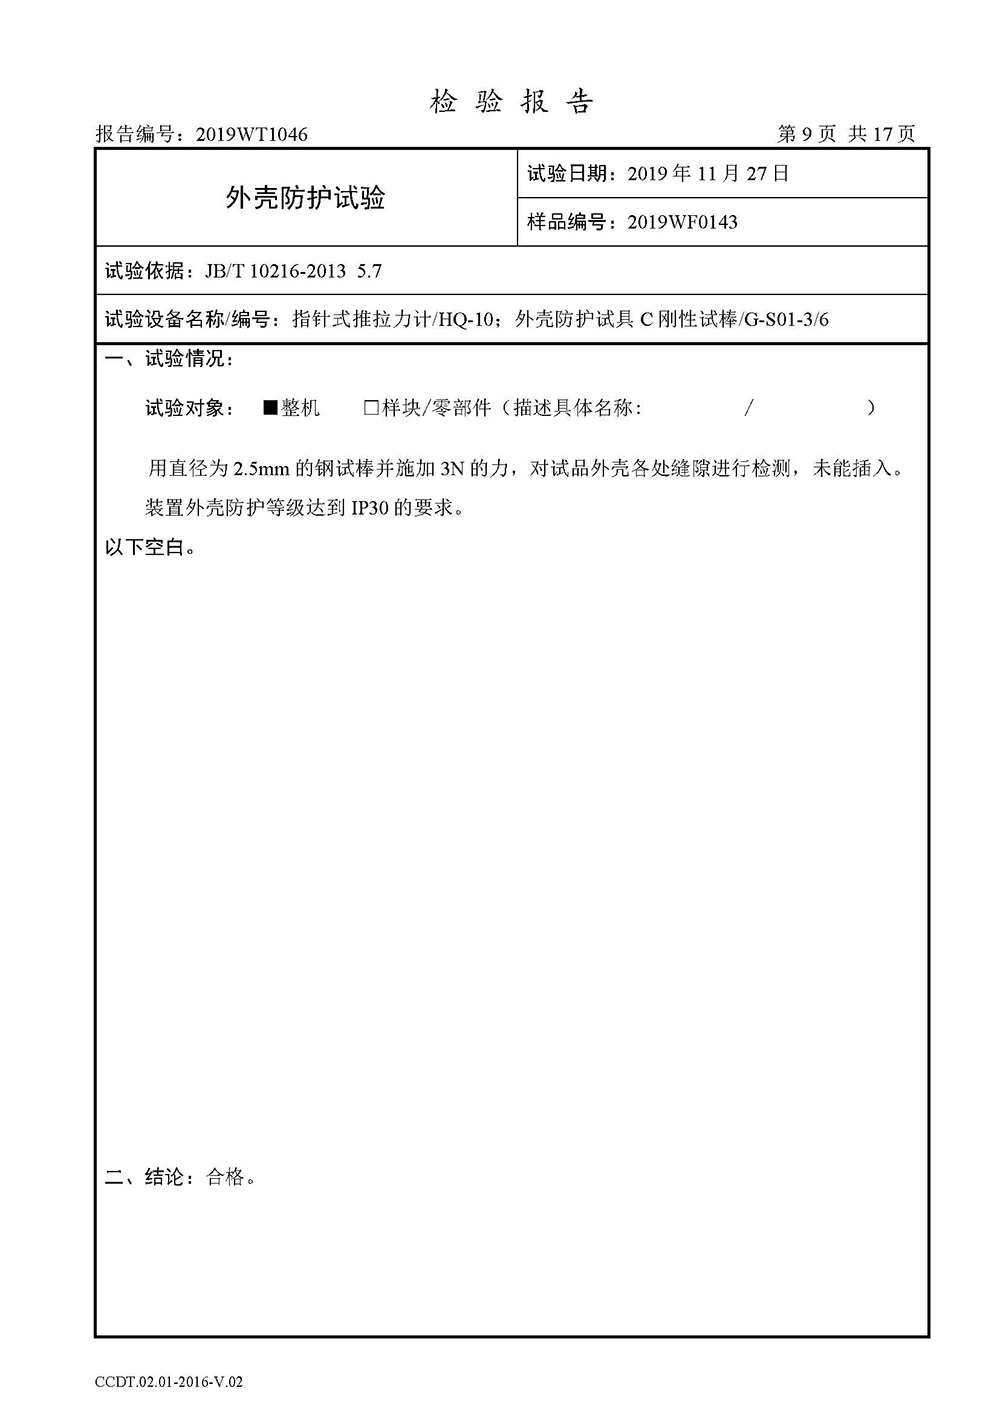 正式报告--2019WT1046-高分子合金电缆桥架-安徽天康（集团）股份有限公司(4)(1)_页面_11.jpg